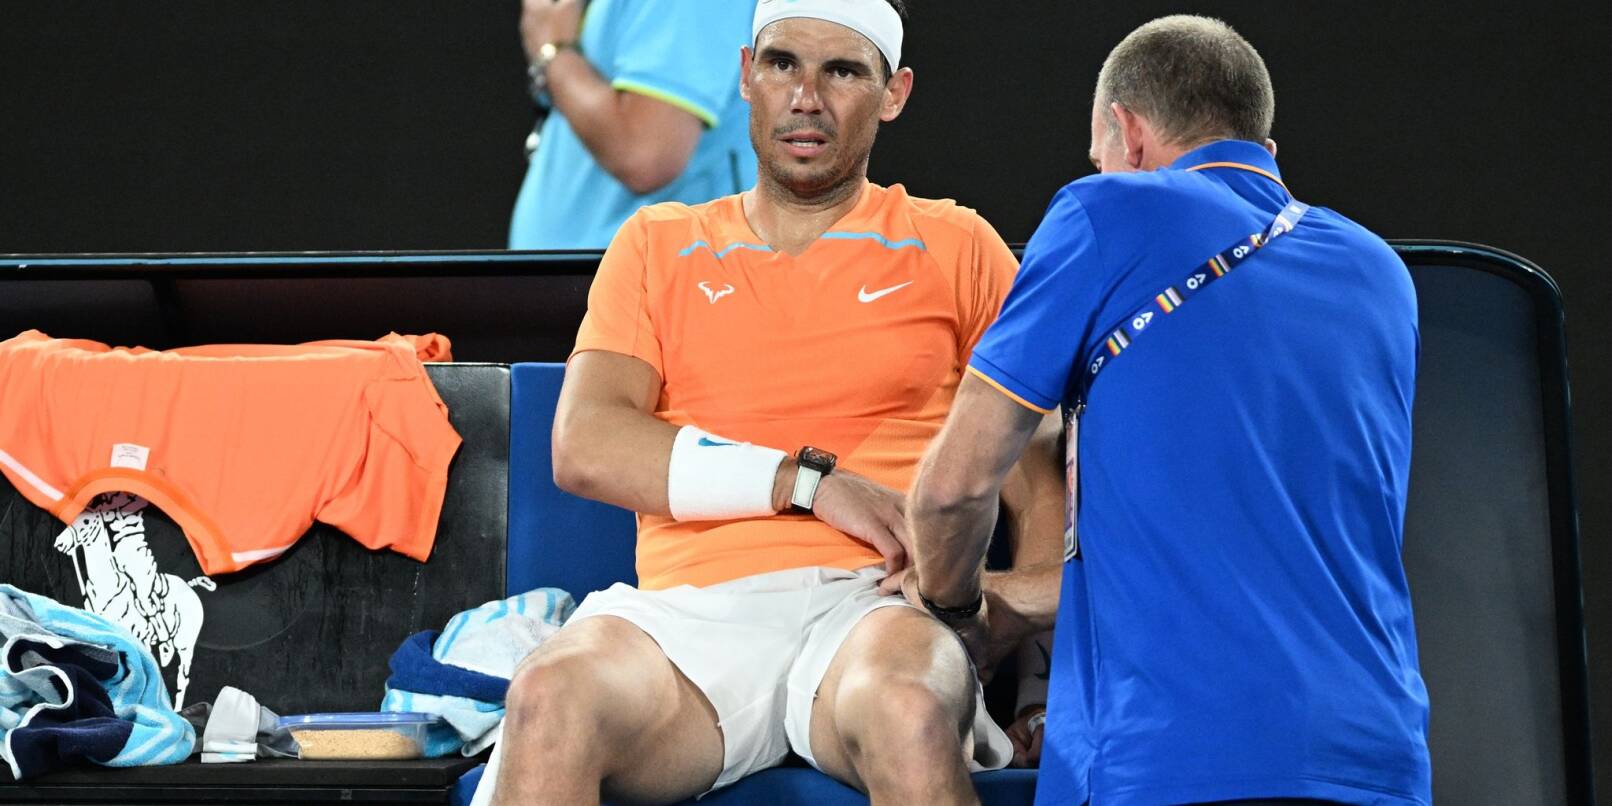 Nach seiner Absage für das ATP-Turnier in Rom ist für Rafael Nadal auch die Teilnahme an den French Open fraglich.